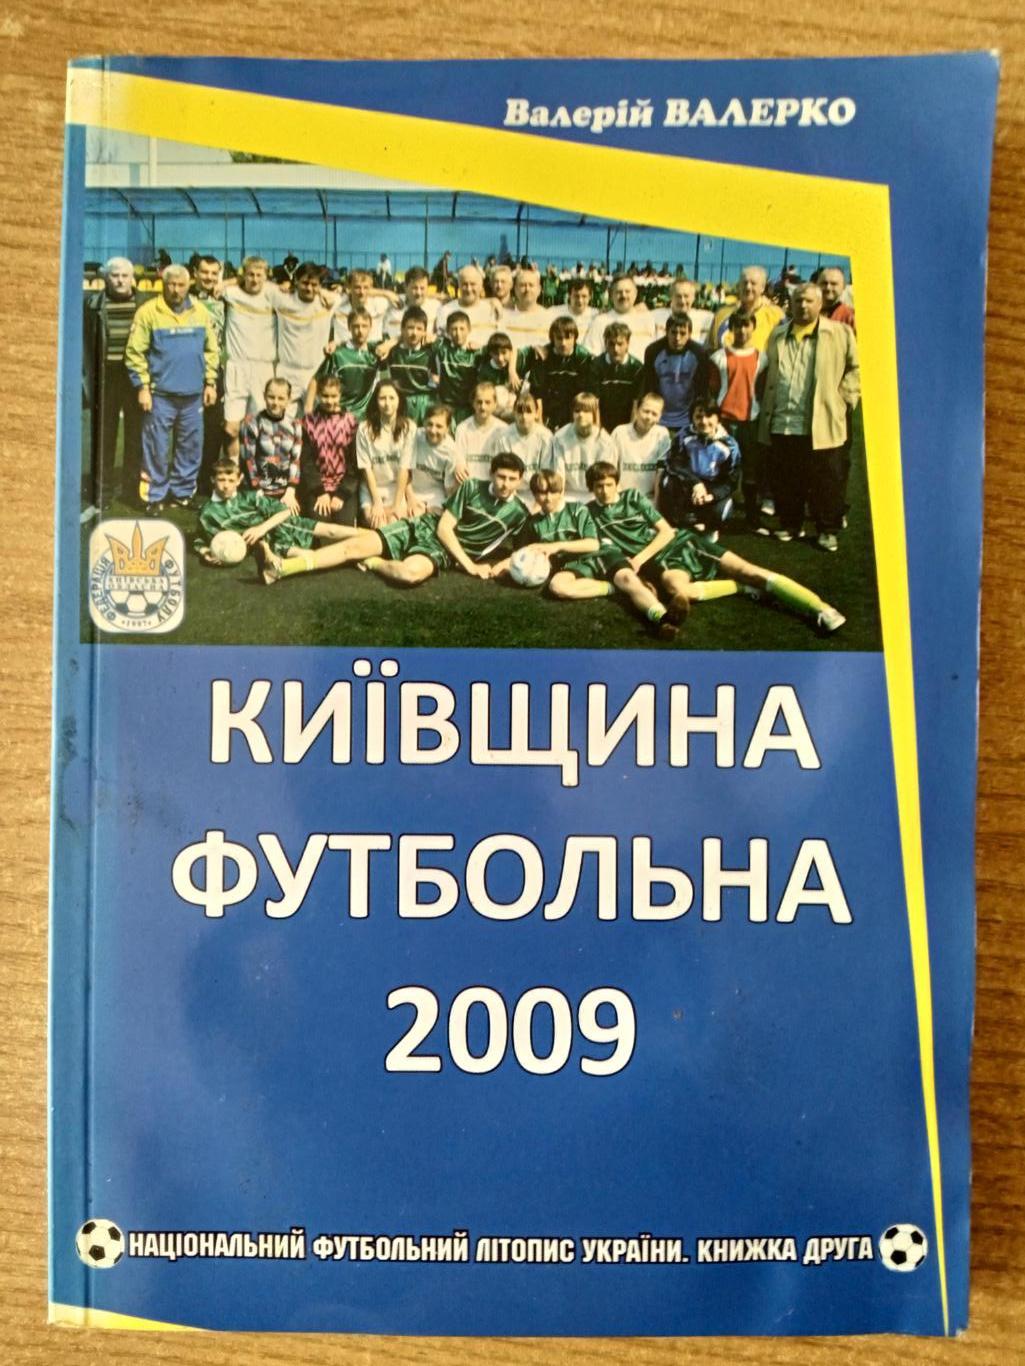 В.Валерко.Киевщина футбольная-2009.